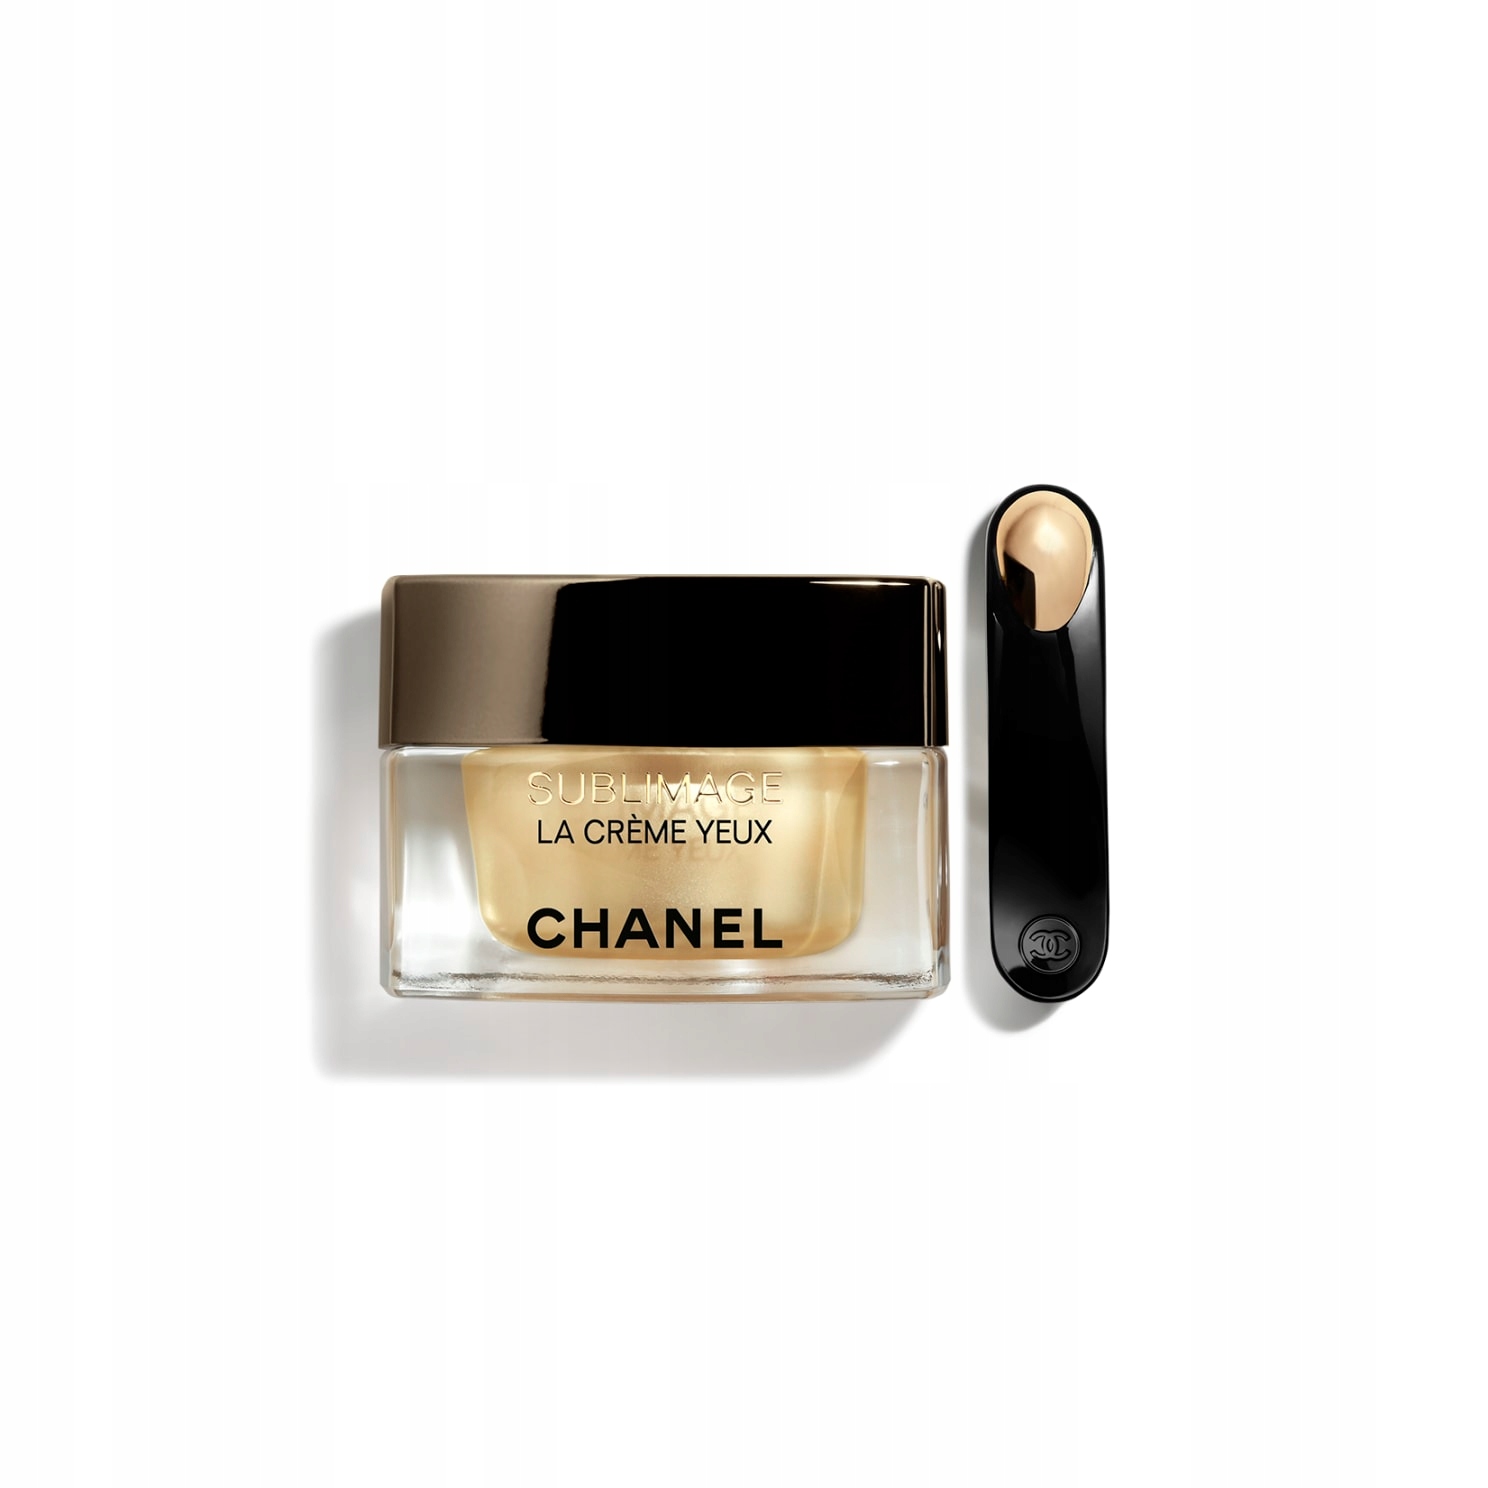  Chanel Sublimage La Creme Yeux Ultimate Regener. 15gr